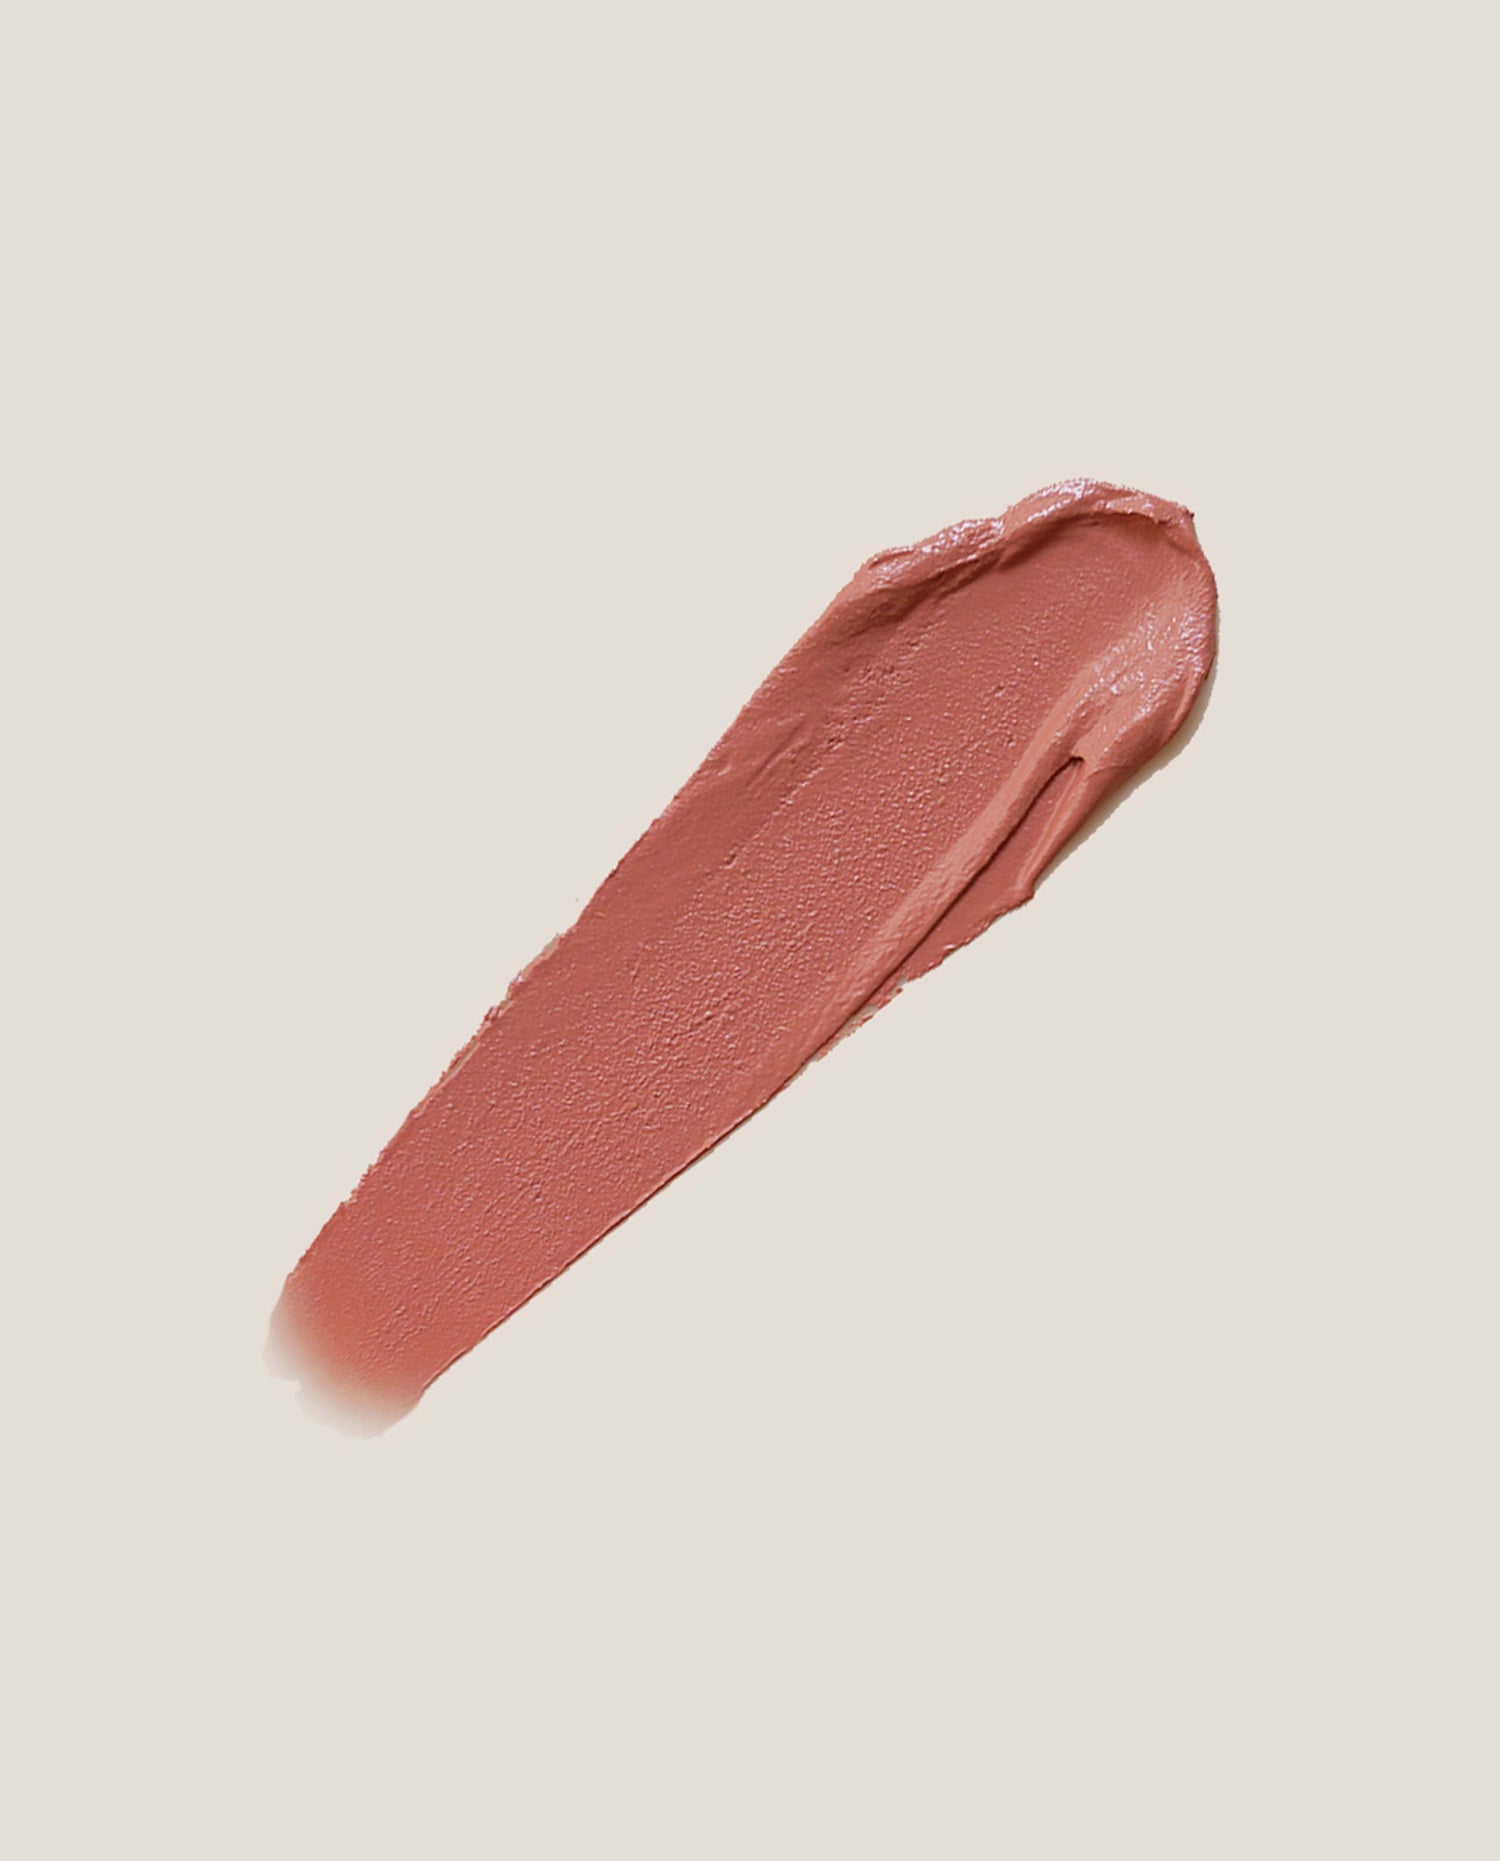 marché commun eclo maquillage beauté clean naturel zéro-déchet rouge à lèvres rose tender